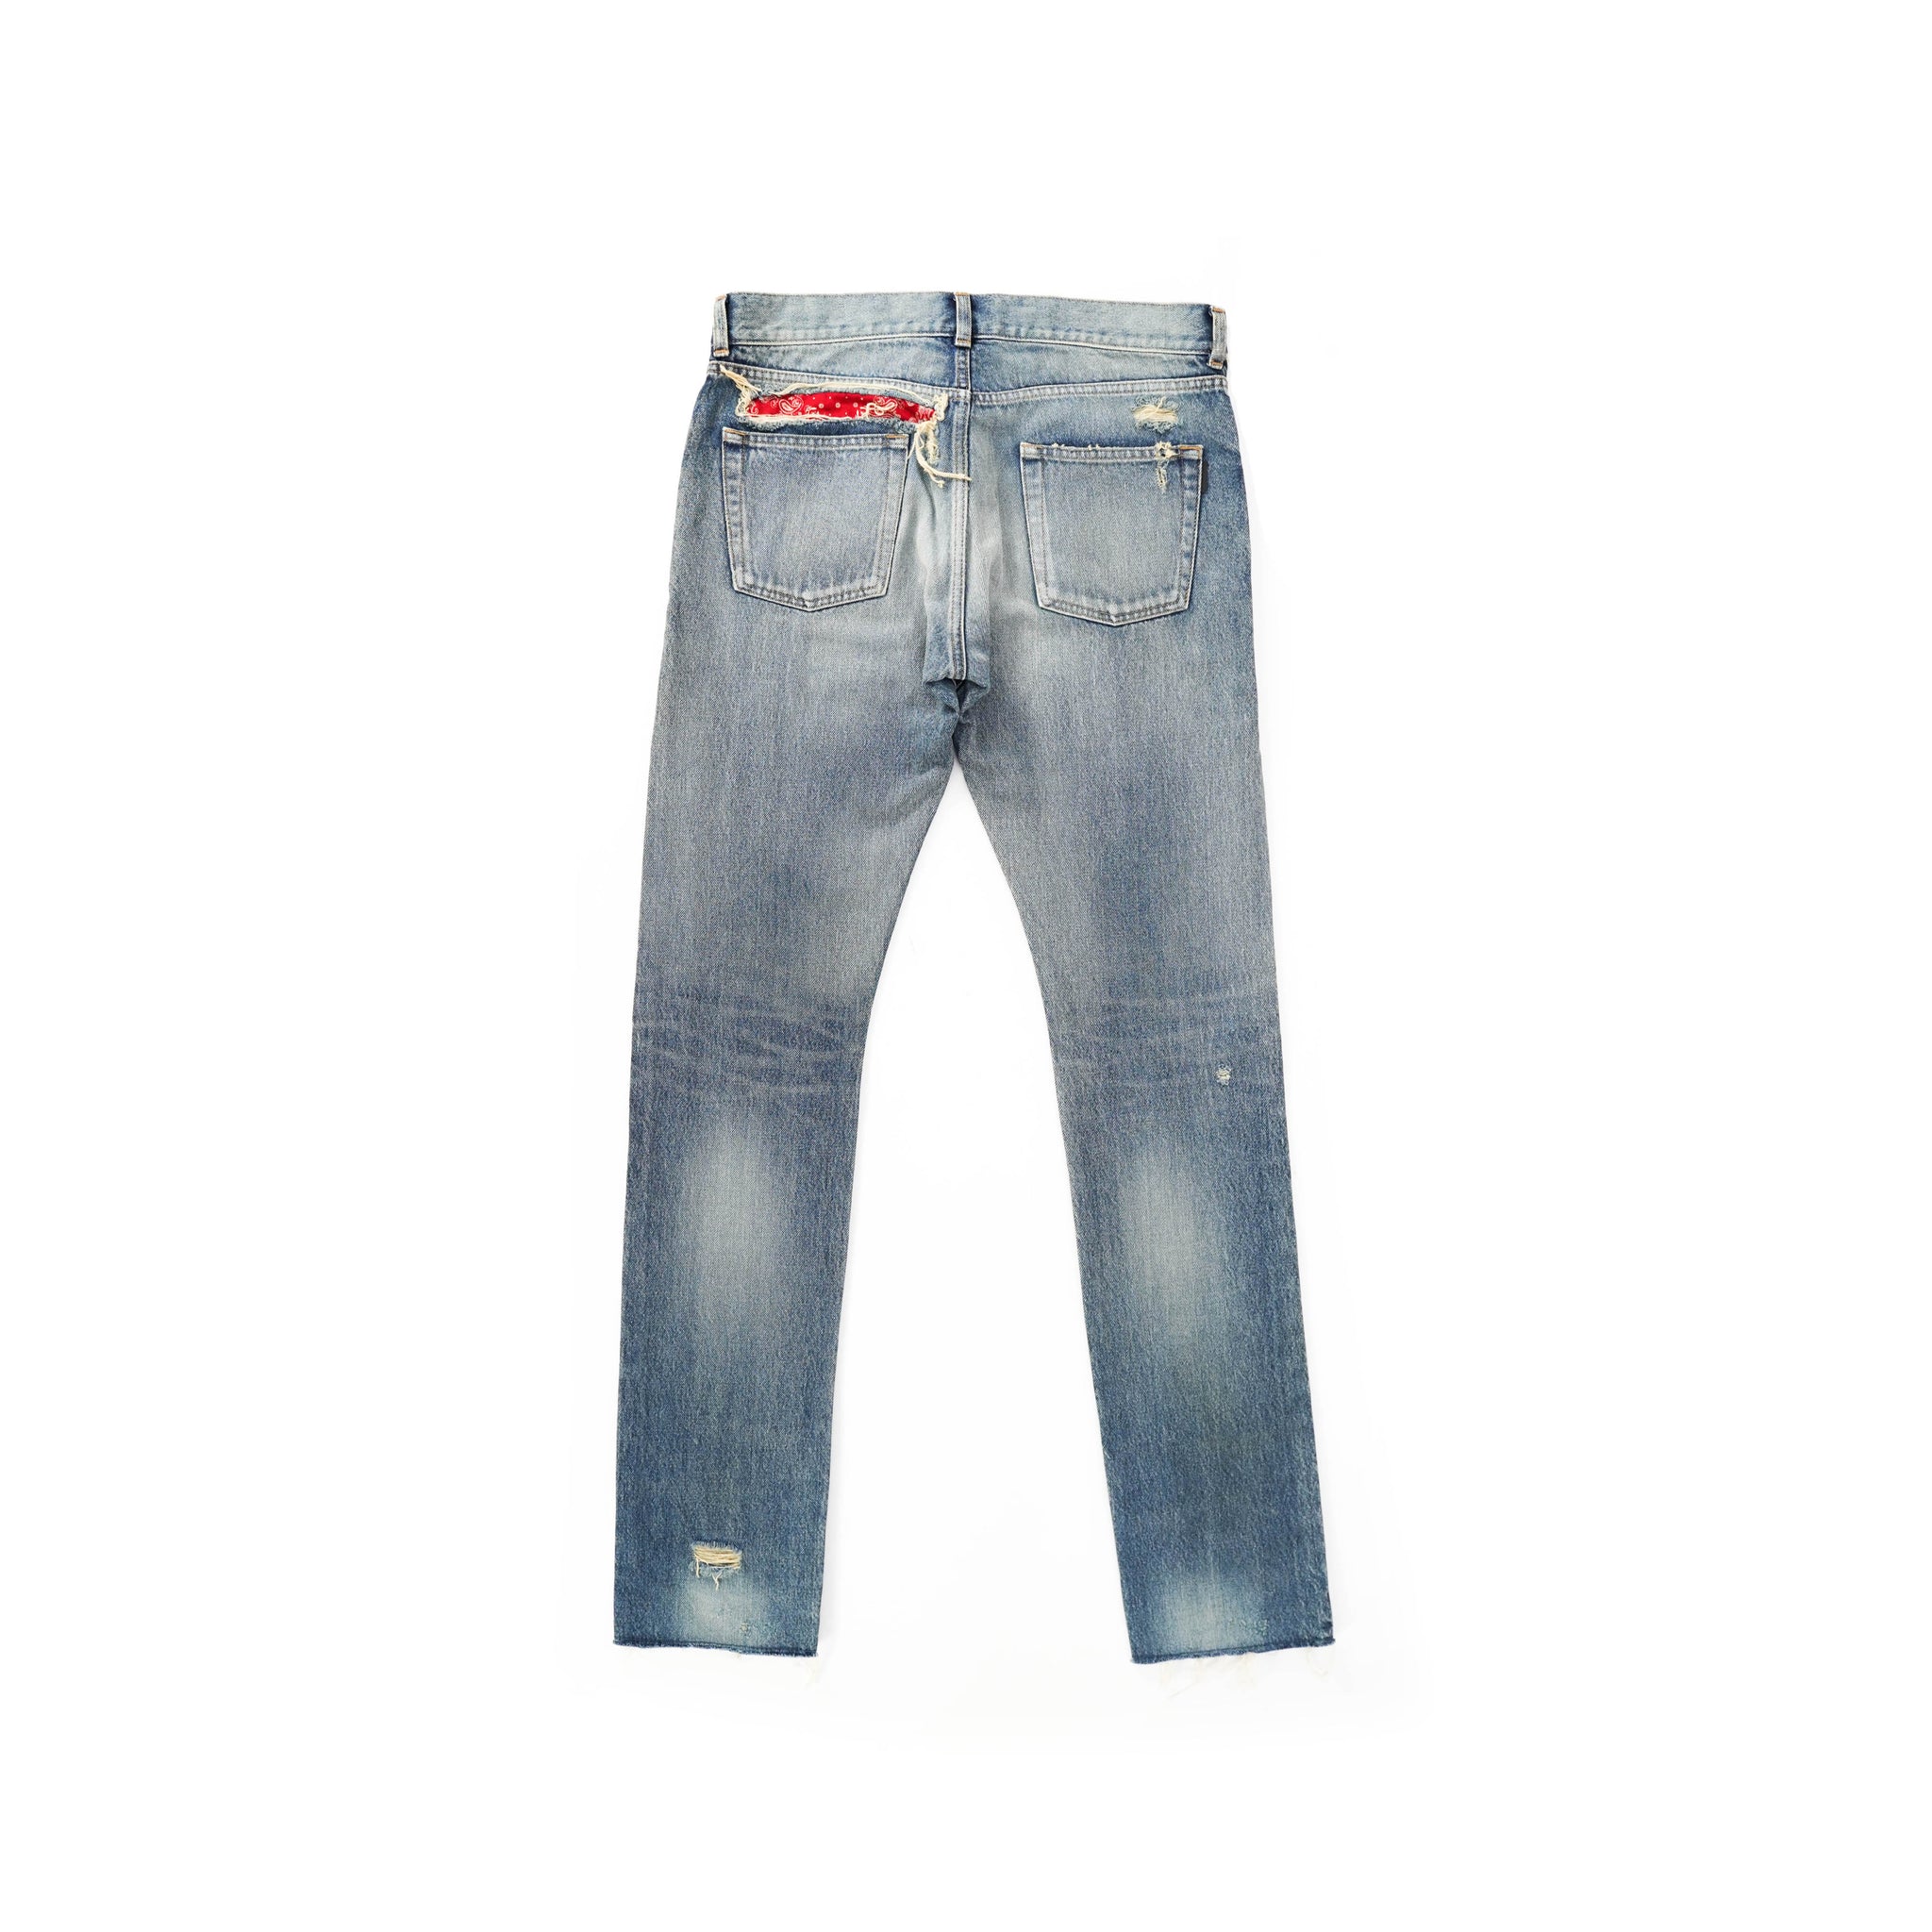 – Distressed Bandana Backyardarchive Jeans